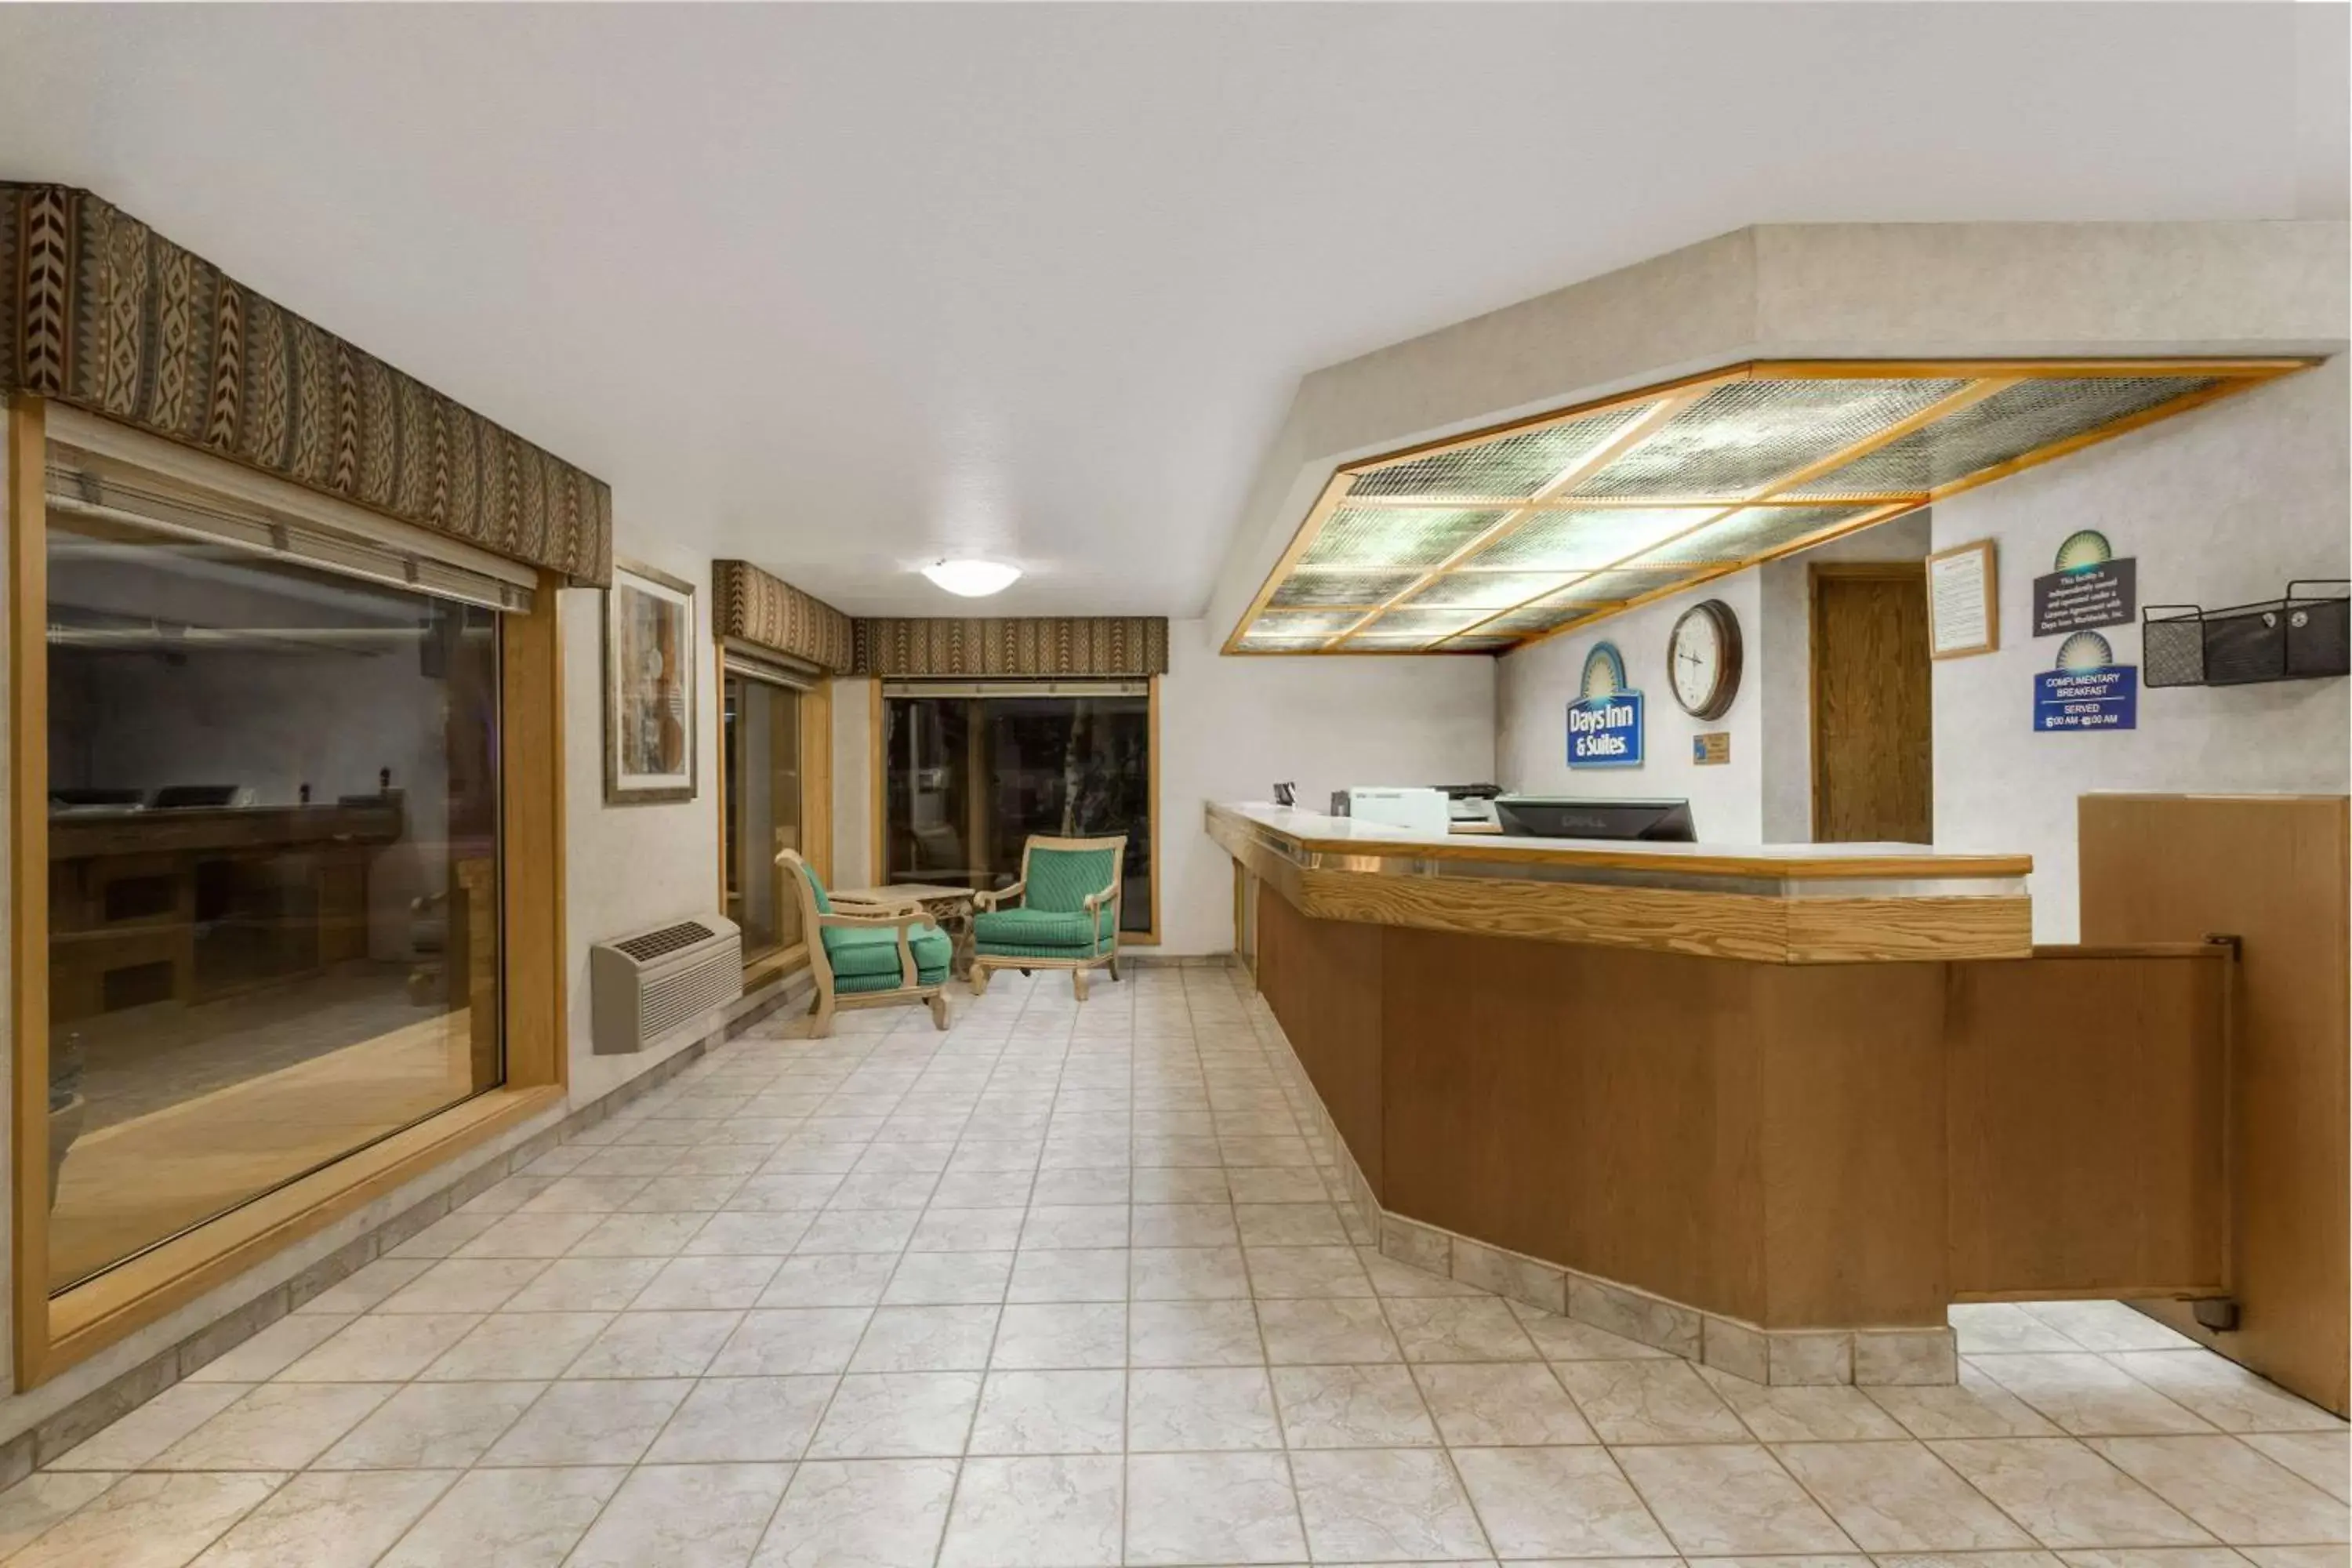 Lobby or reception, Lobby/Reception in Days Inn & Suites by Wyndham Kanab